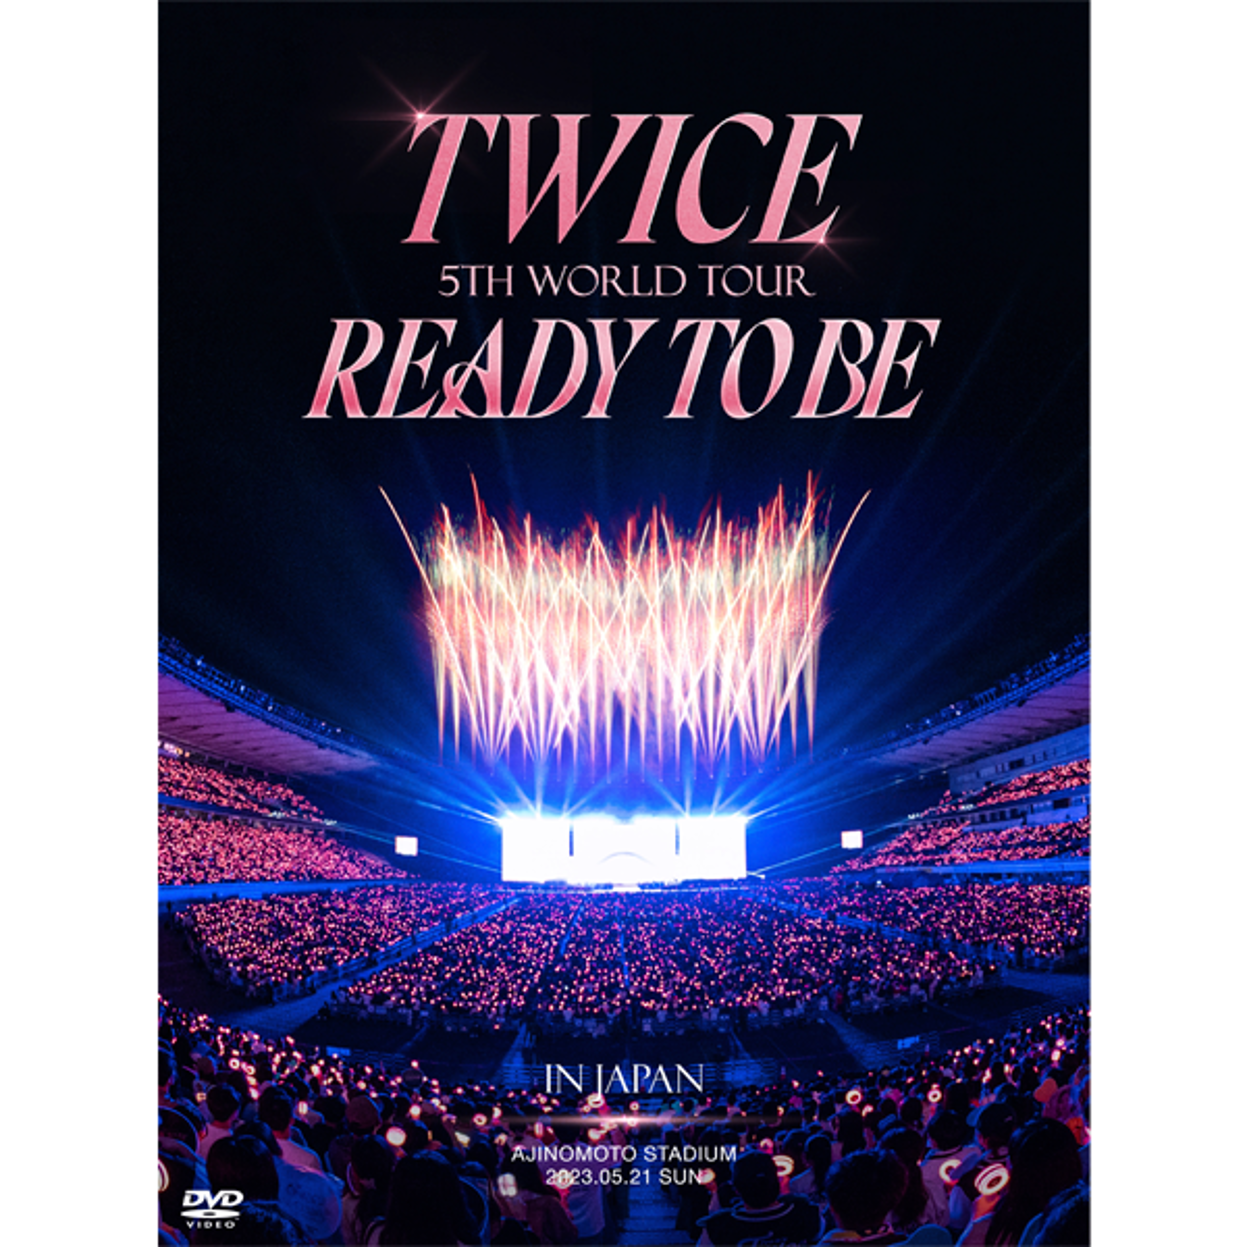 트와이스 (TWICE) - 5TH WORLD TOUR [READY TO BE] in JAPAN (DVD 한정반)